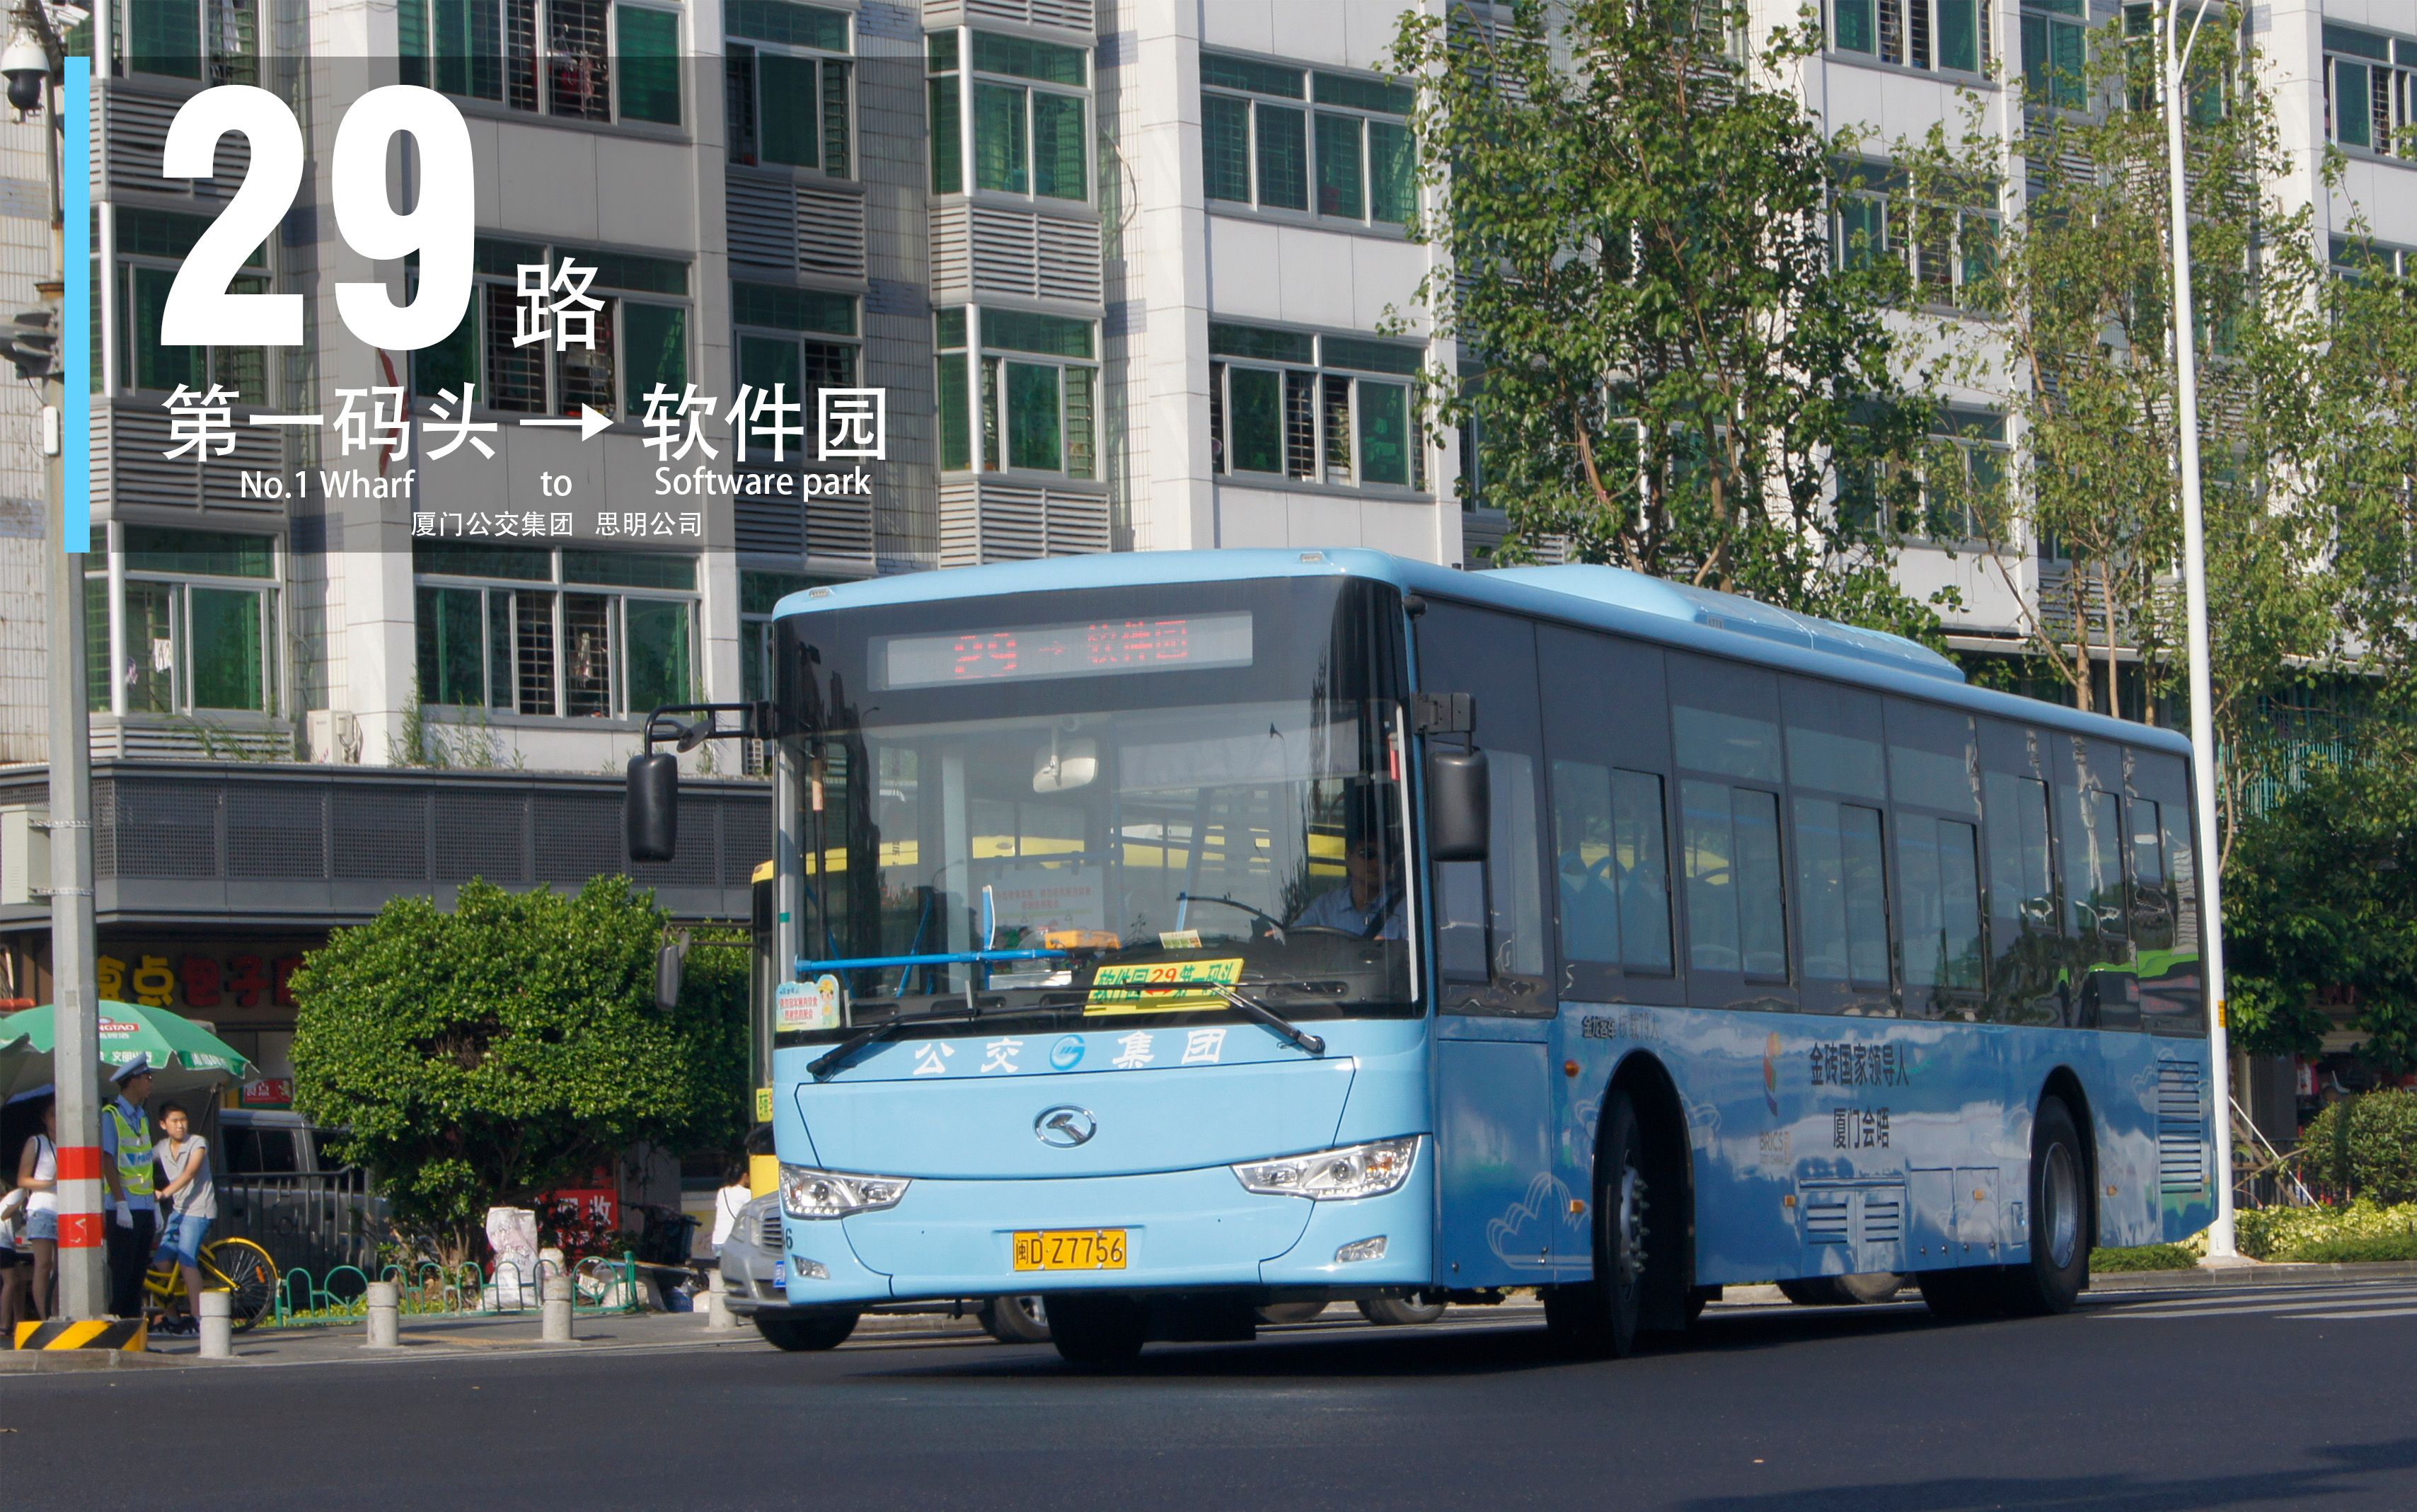 全景天窗 搭载5G+VR设备 郎朗音乐巴士今晚正式上线_深圳新闻网